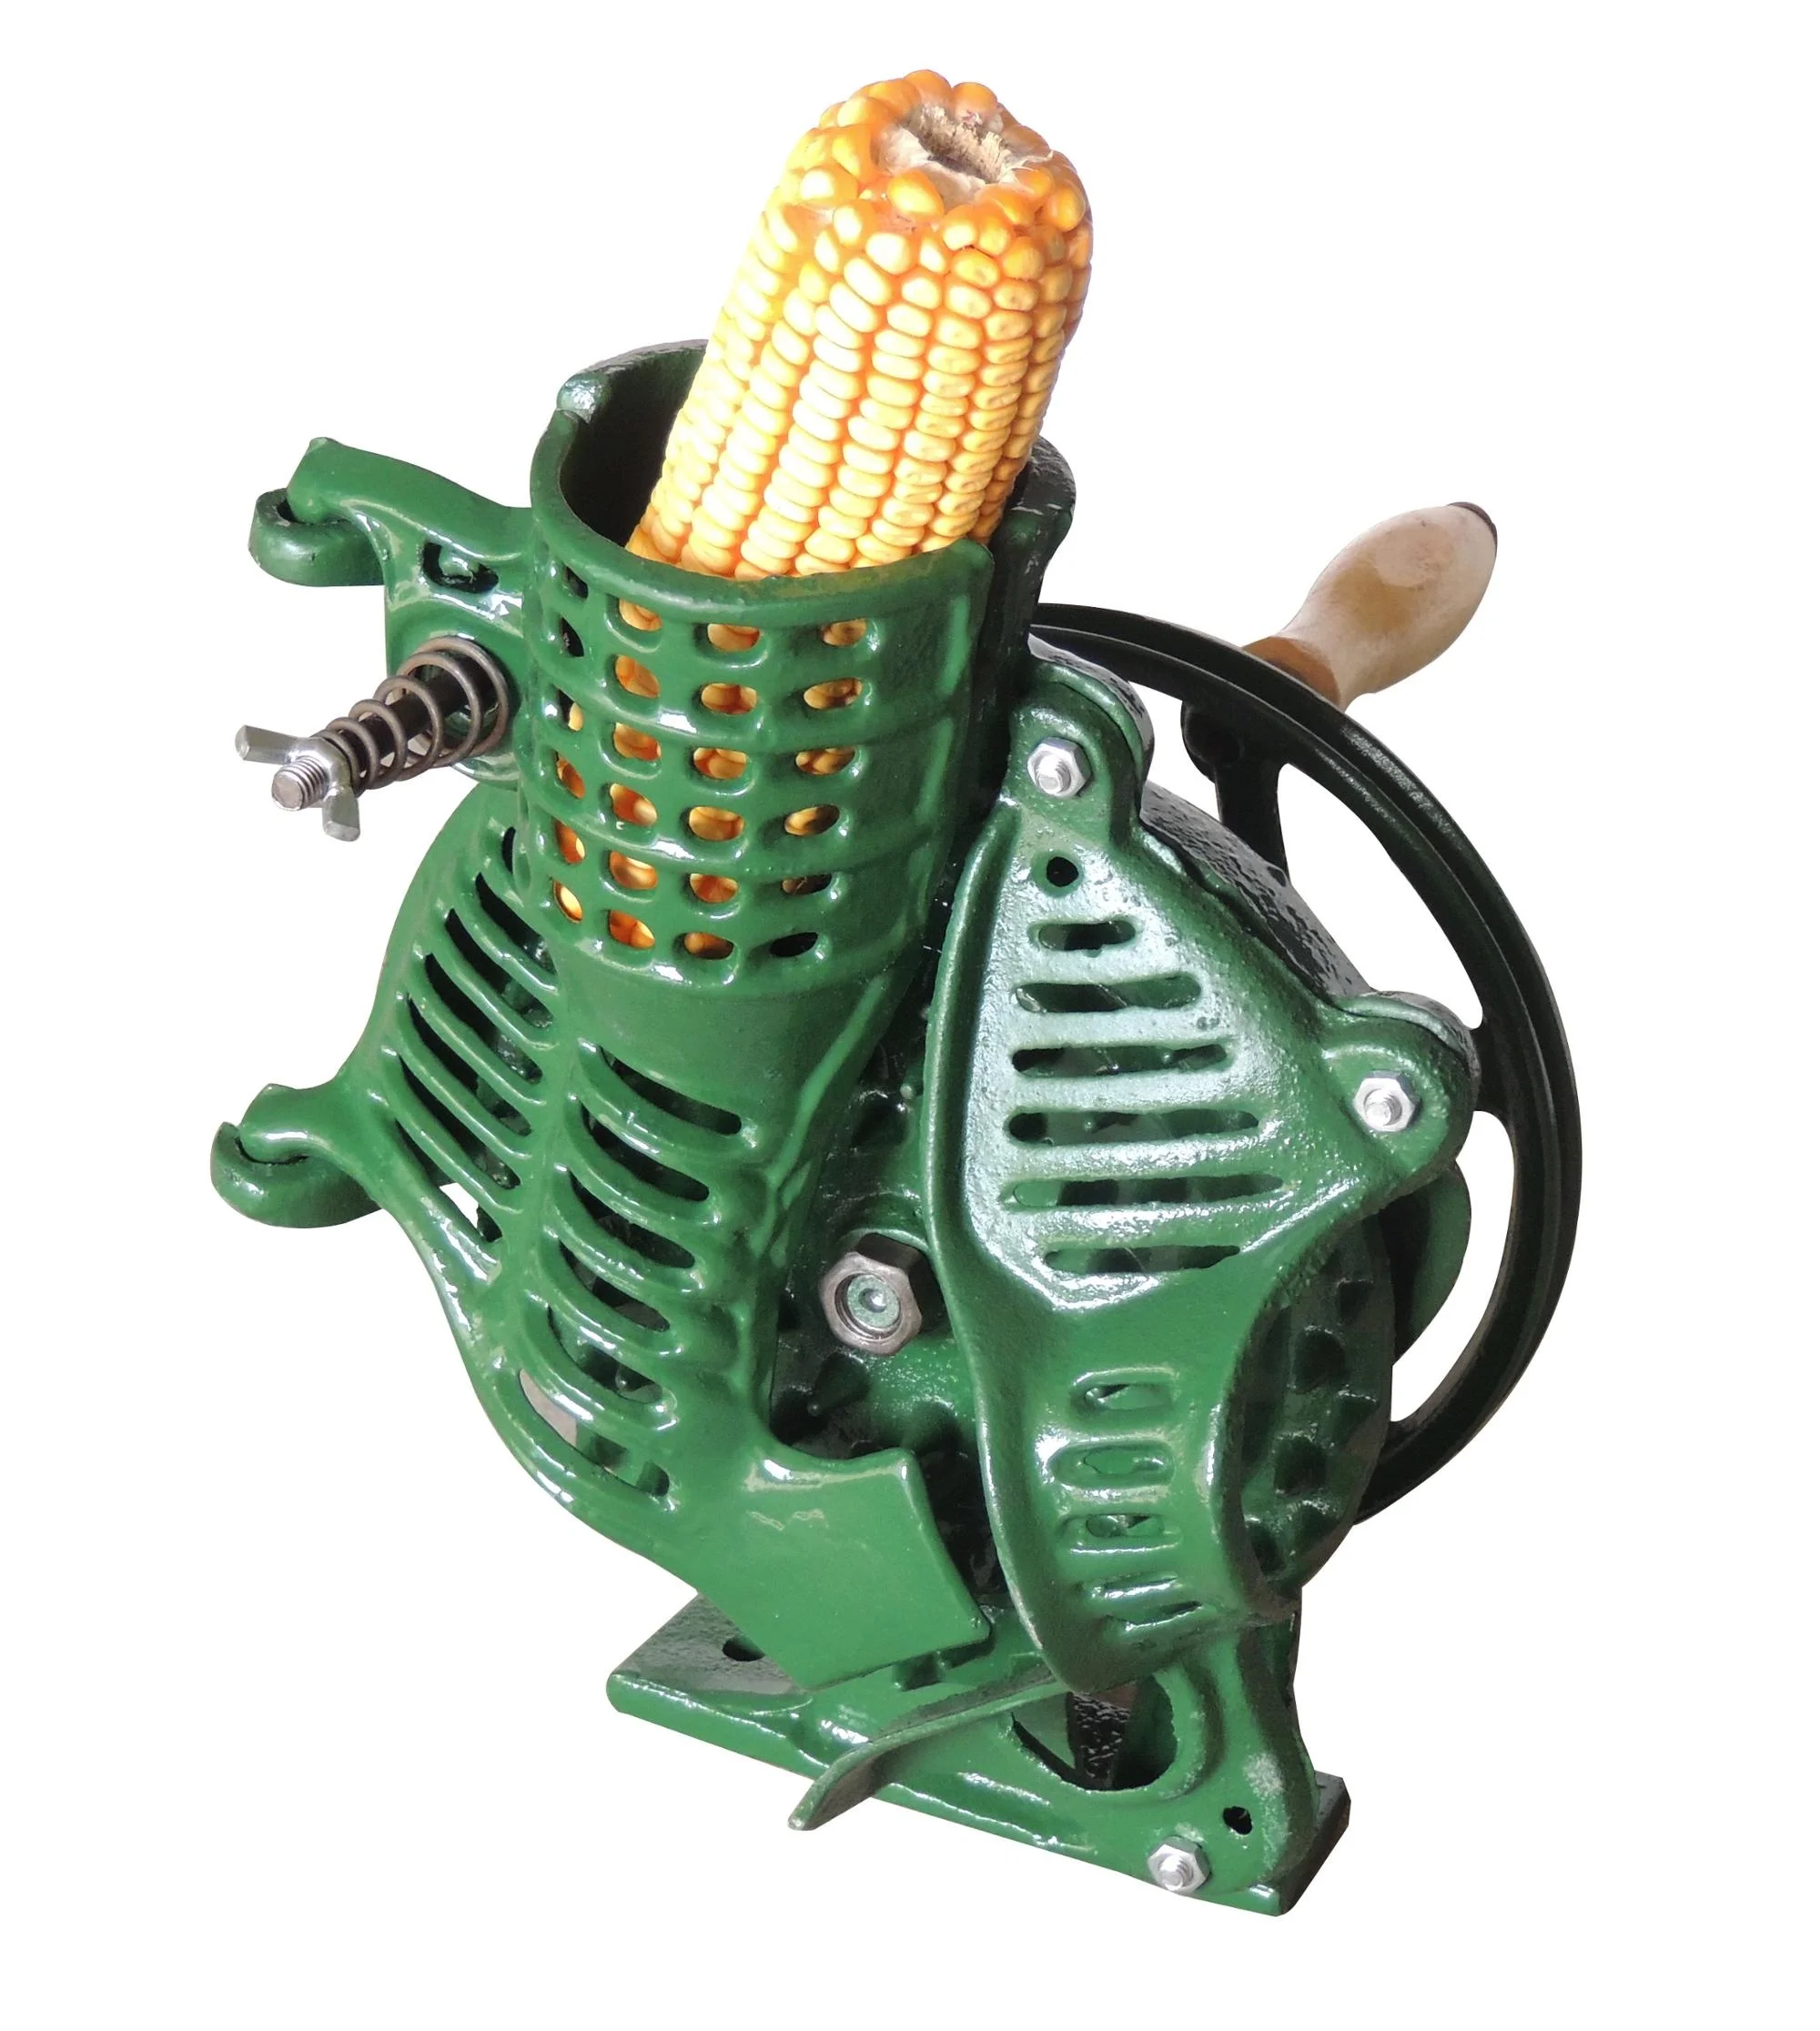 手動式トウモロコシ脱穀機トウモロコシ殻むき機 - Buy Hand Operated Corn Sheller,Electrical Corn  Sheller,Manual Corn Sheller For Sale Product on Alibaba.com